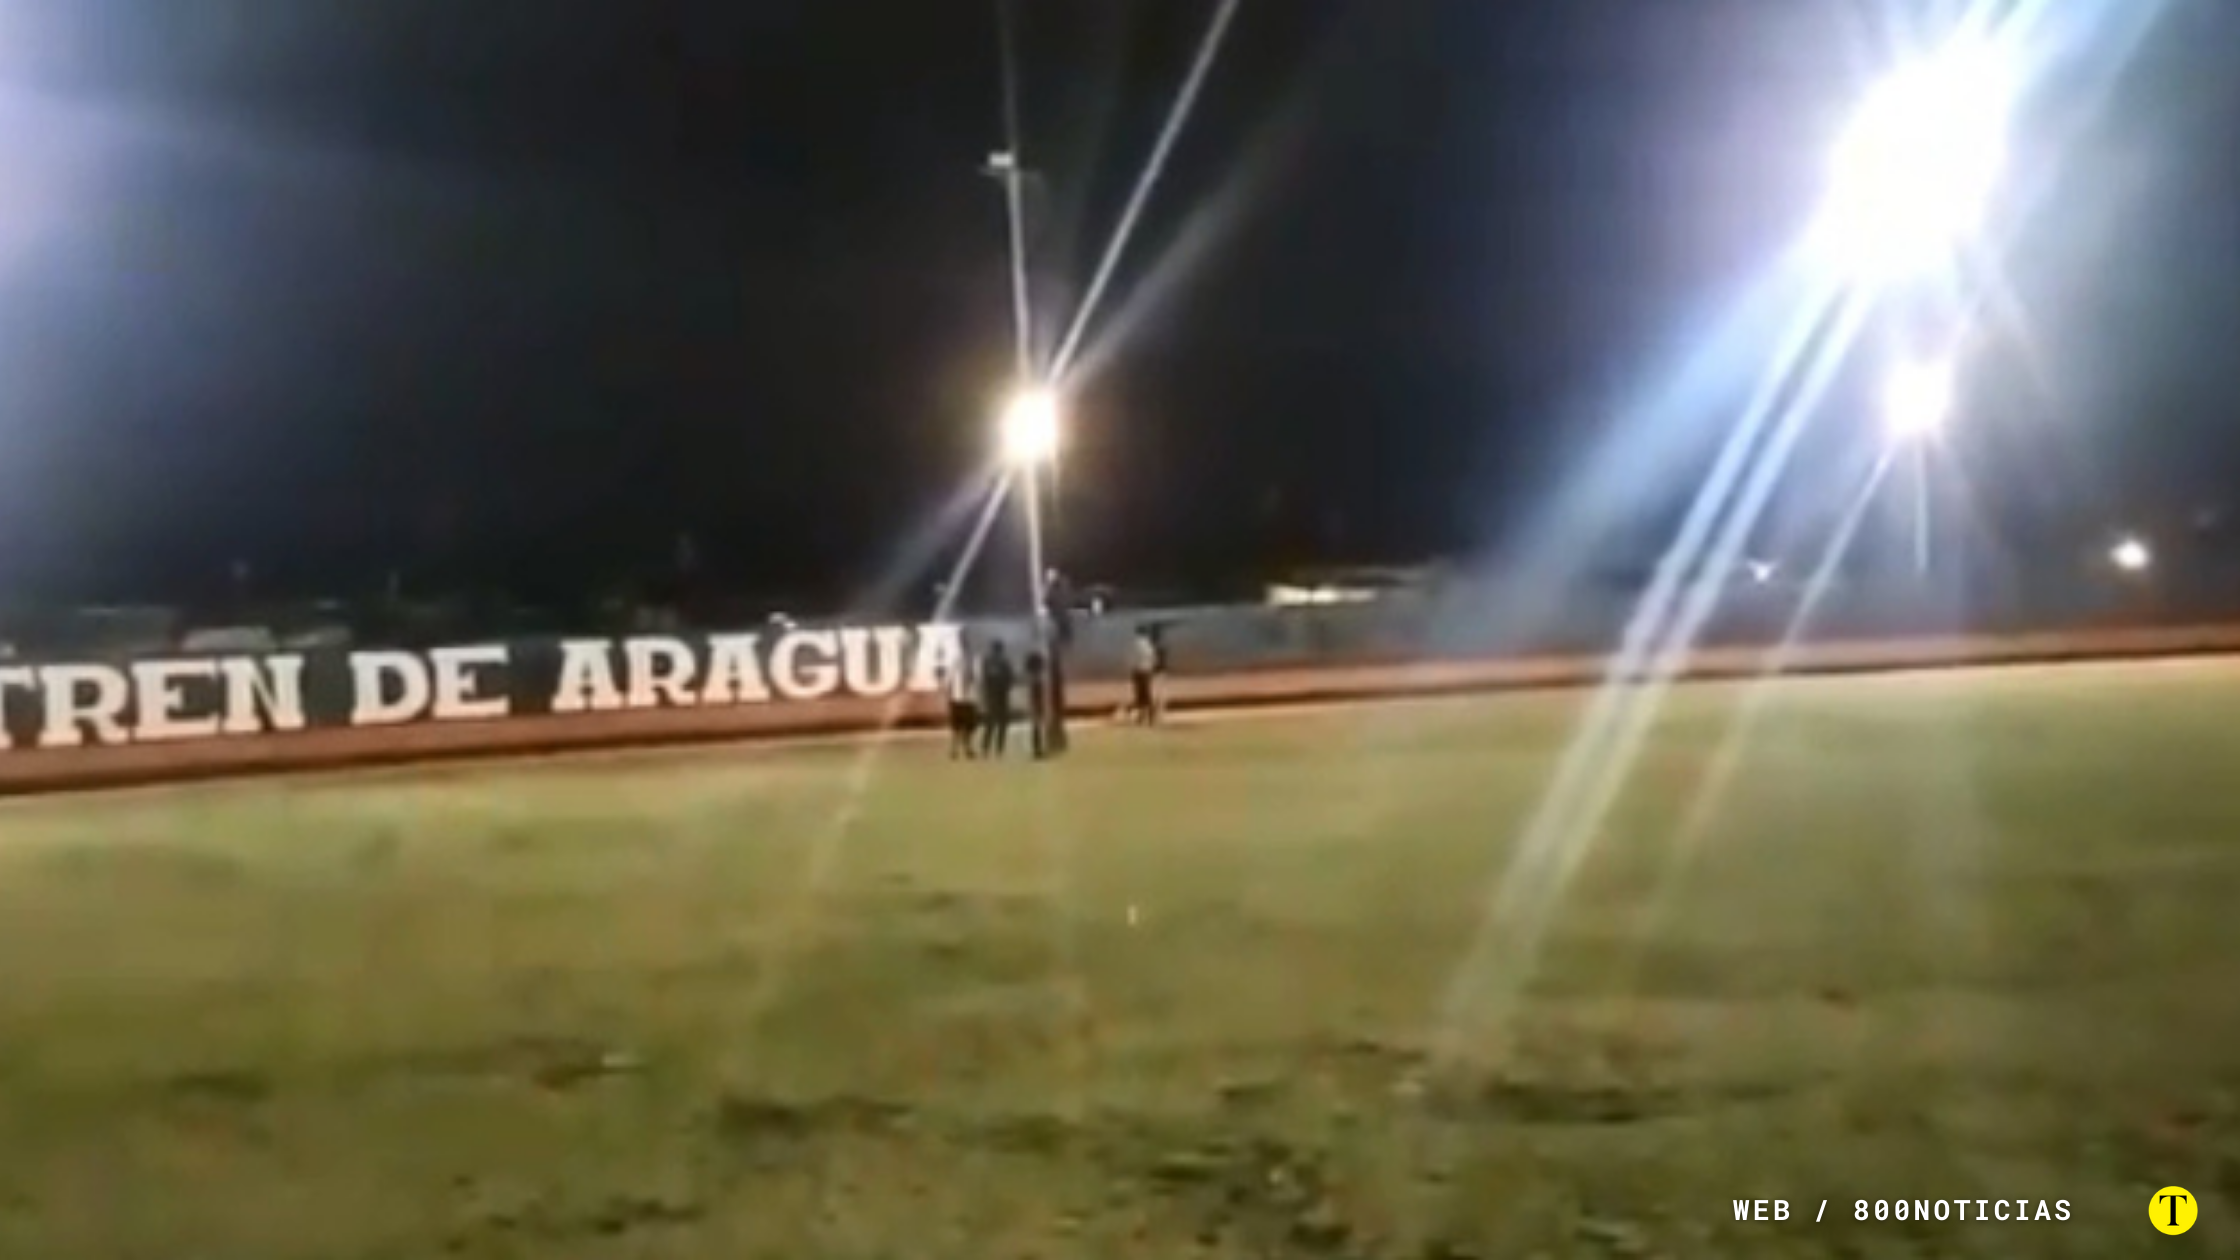 Banda criminal “Tren de Aragua” presumen estadio en redes sociales